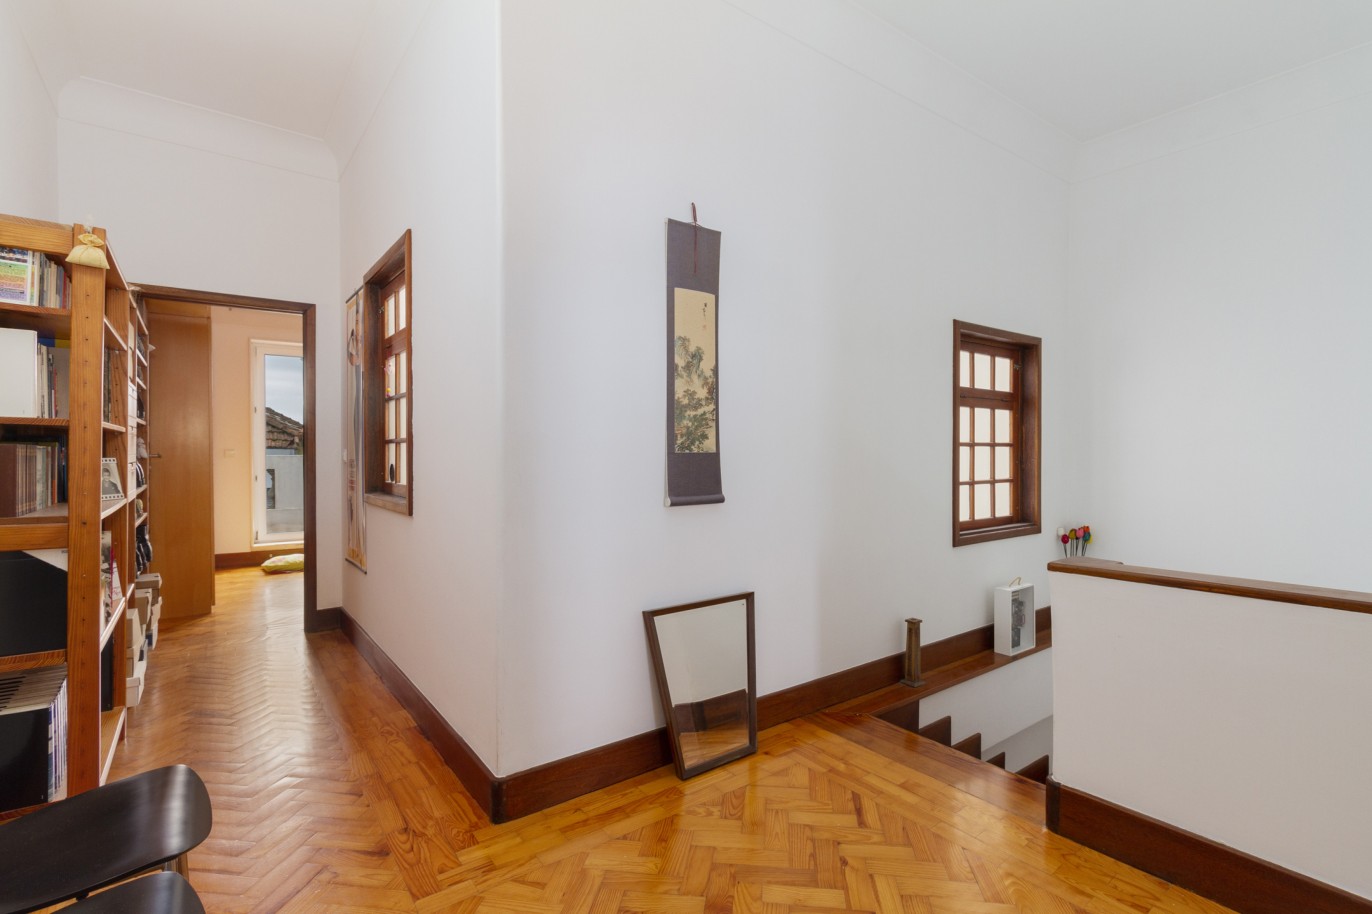 Apartamento duplex com terraço, para venda, no Bairro das Artes, Porto_220040